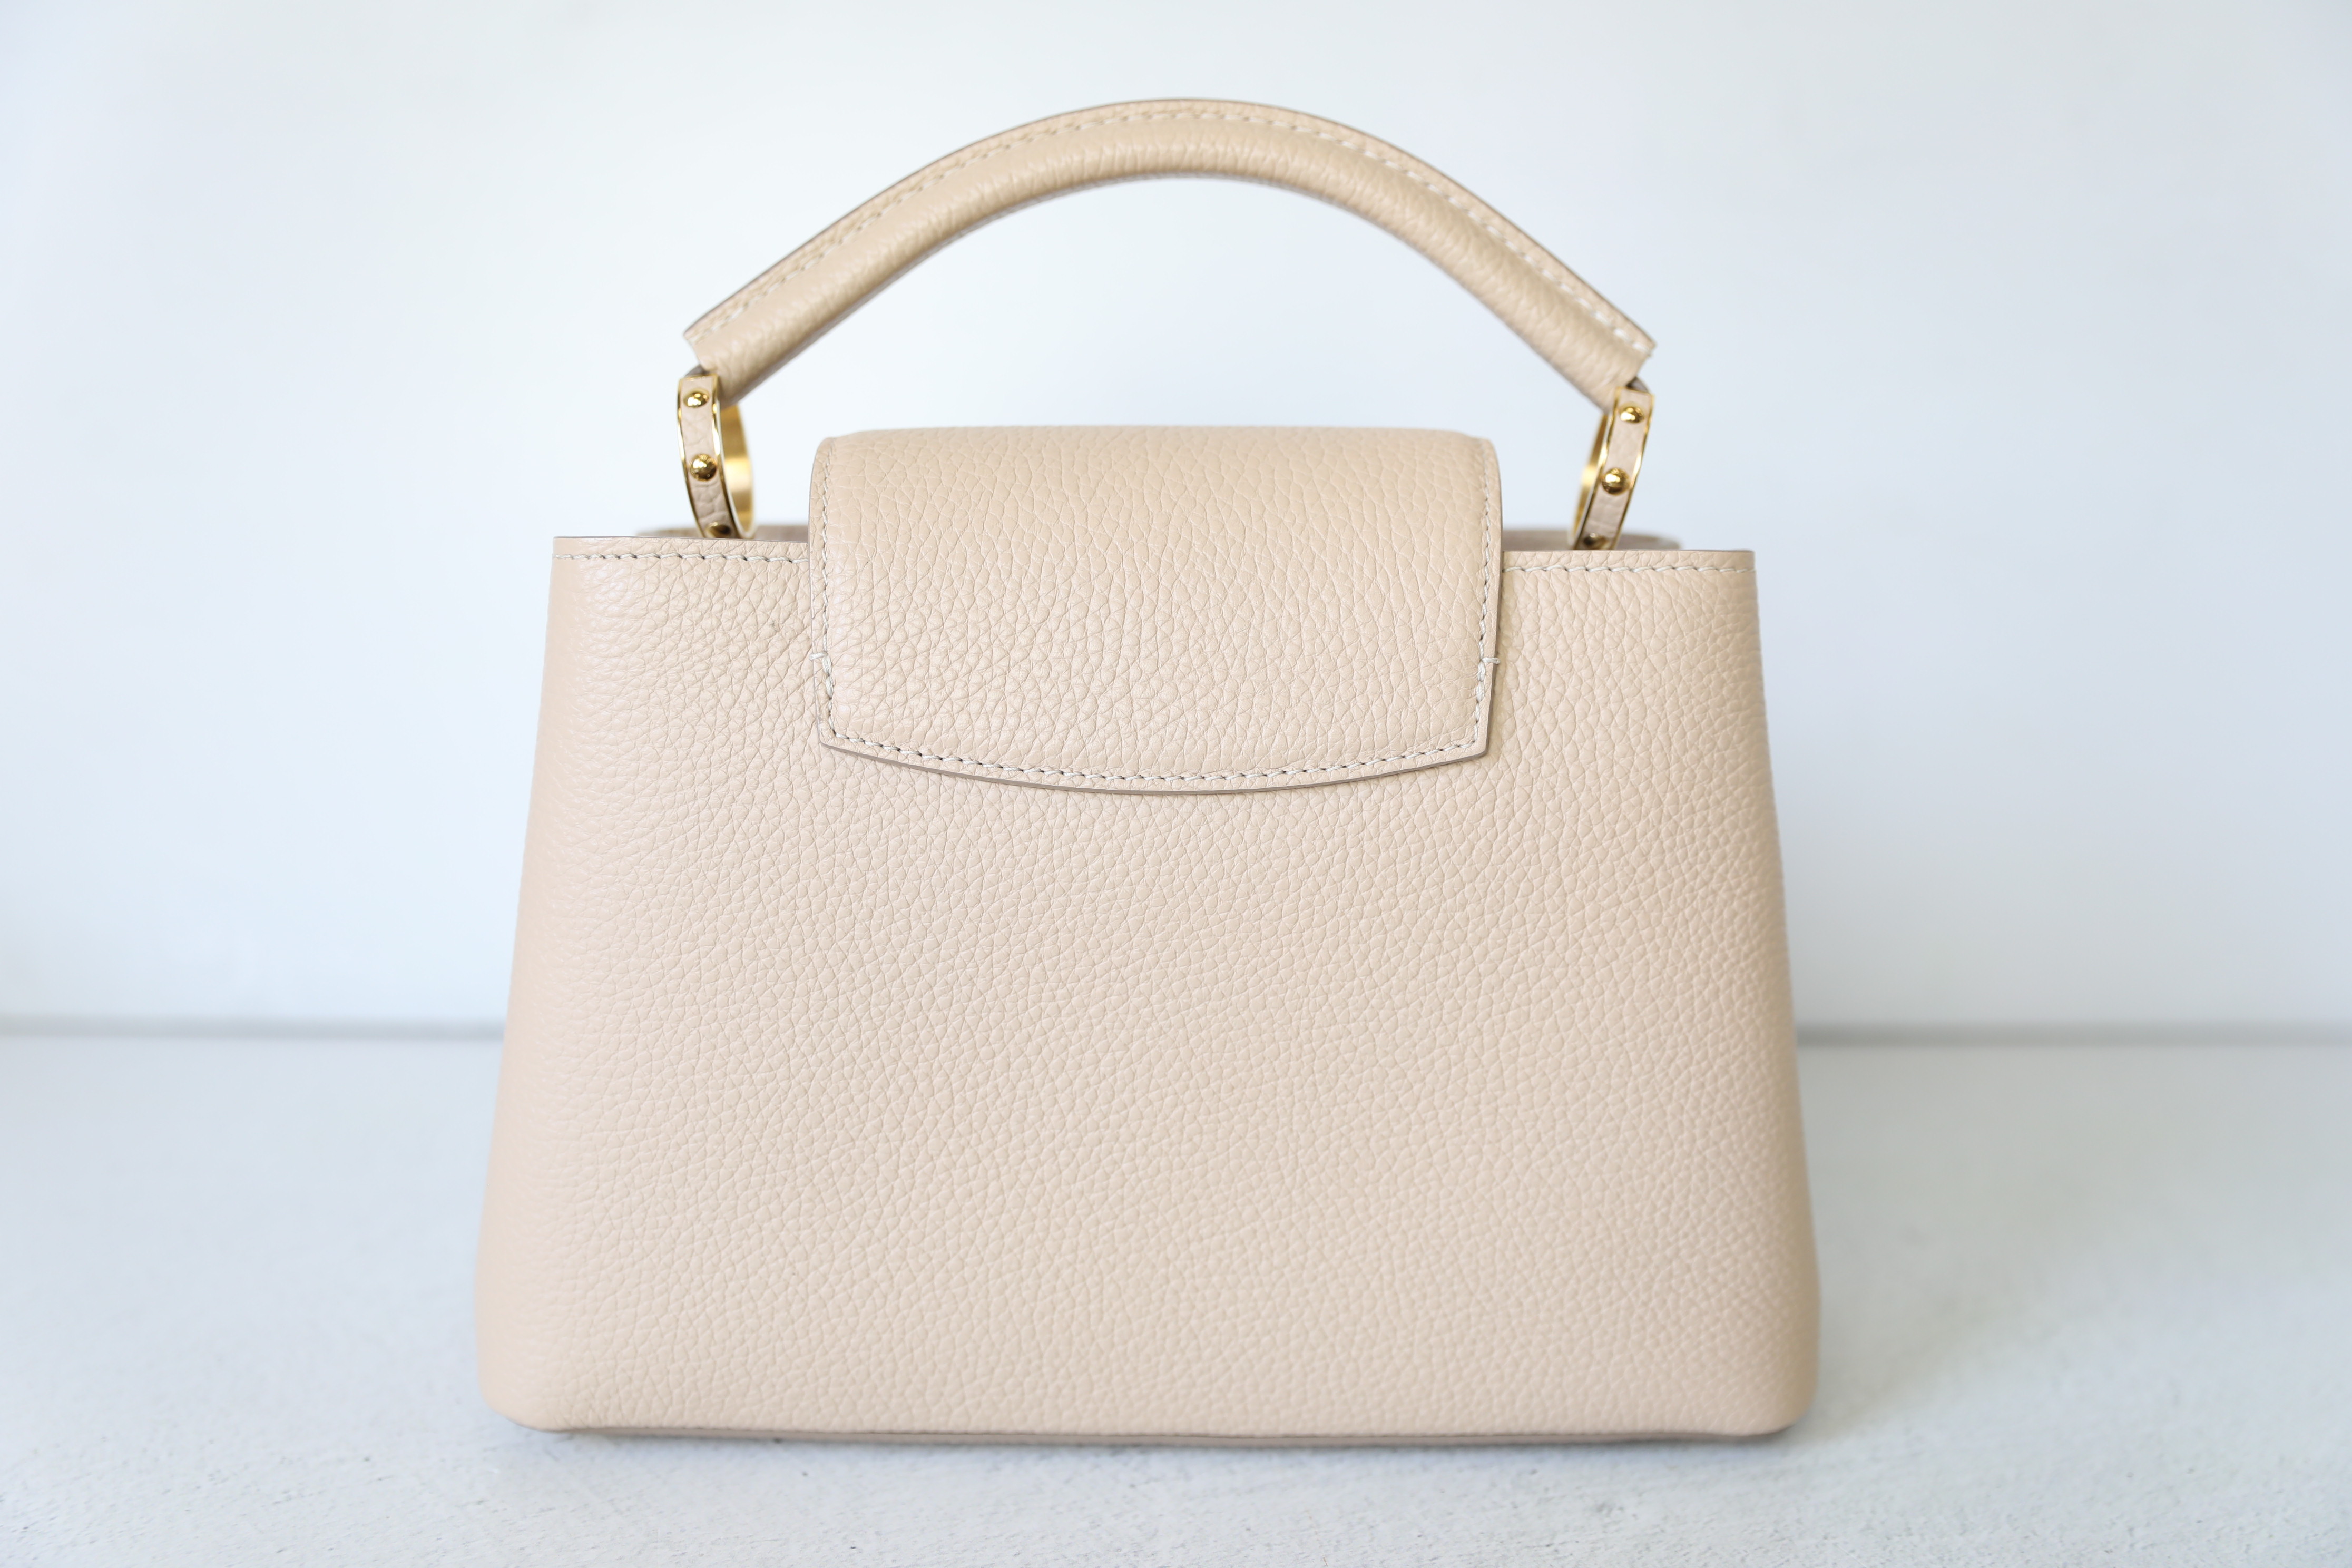 Louis Vuitton Rose Ballerine Capucines BB Bag – The Closet